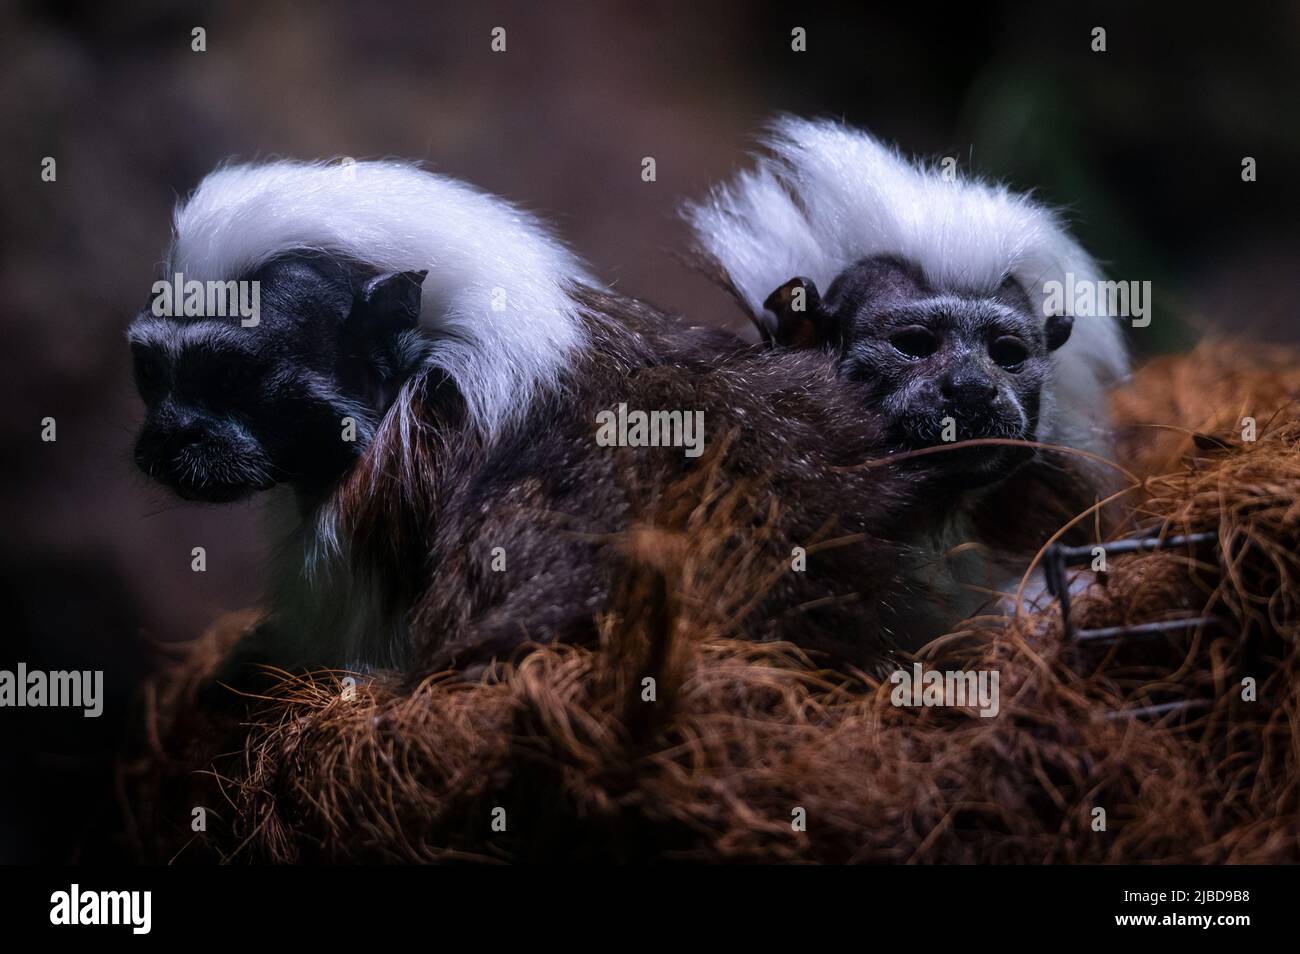 Dos tamarin de algodón (Saguinus oedipus), uno de los primates más pequeños, representado en su recinto en el zoológico de Faunia. Foto de stock